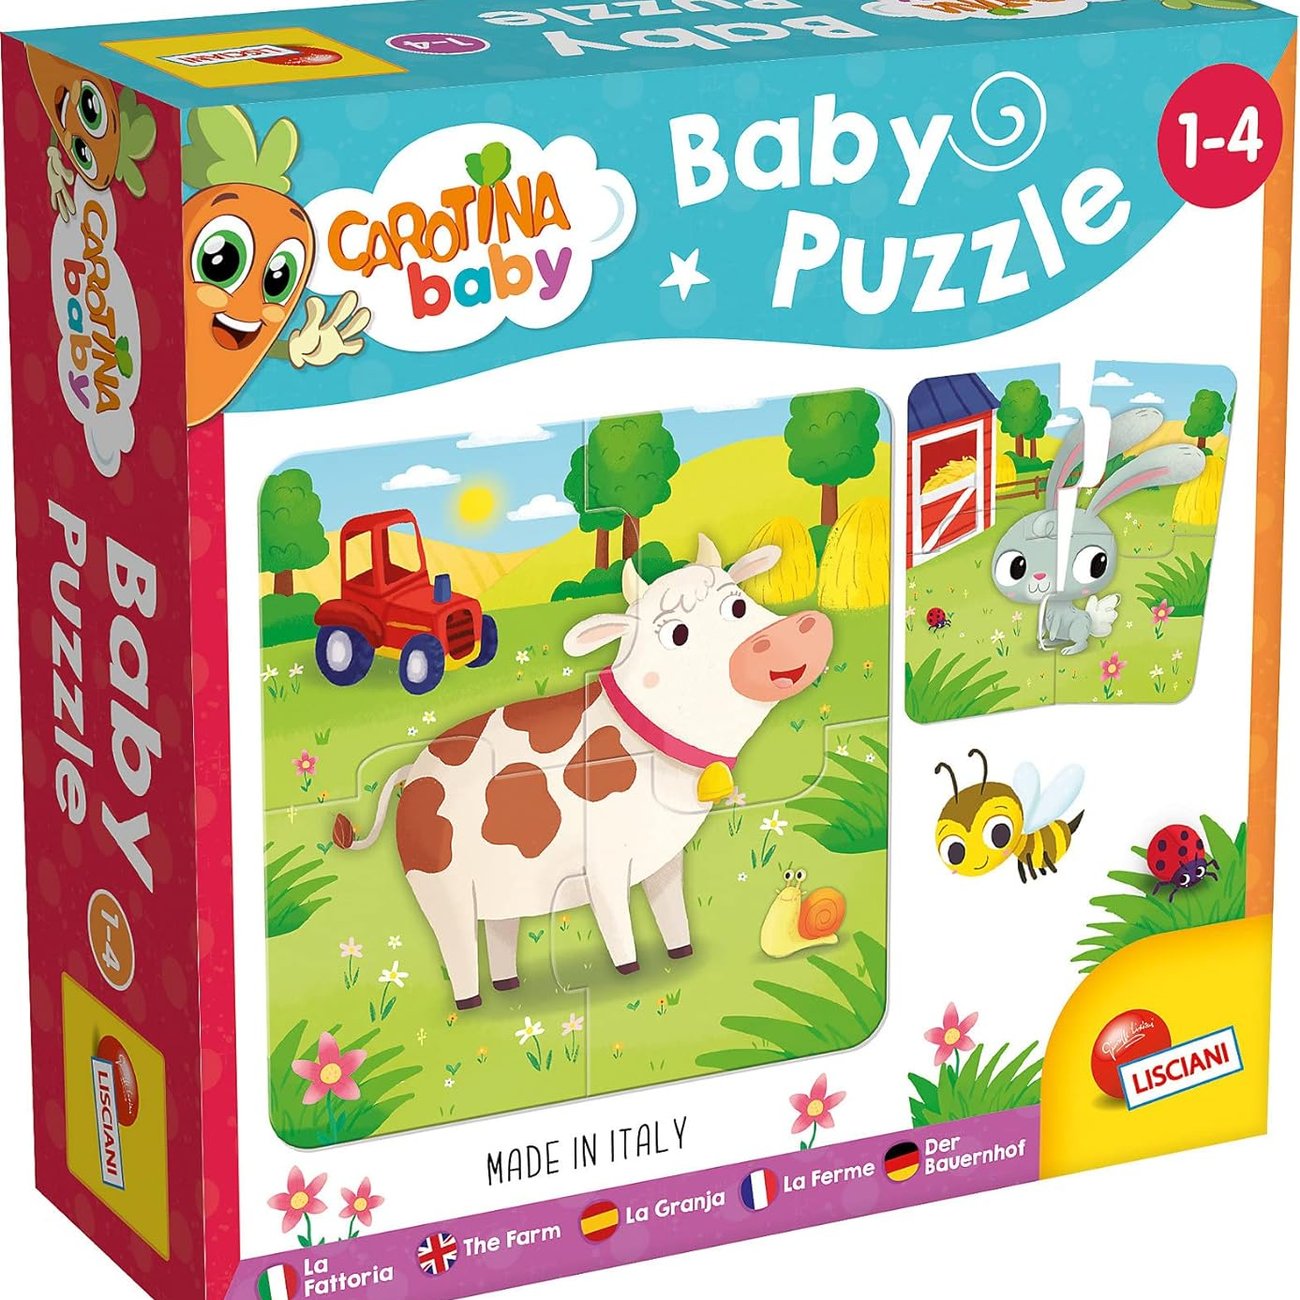 LISCIANI - Carotina Baby - Bauernhof Puzzle - Lernspielzeug für Kinder mit Bauernhoftieren